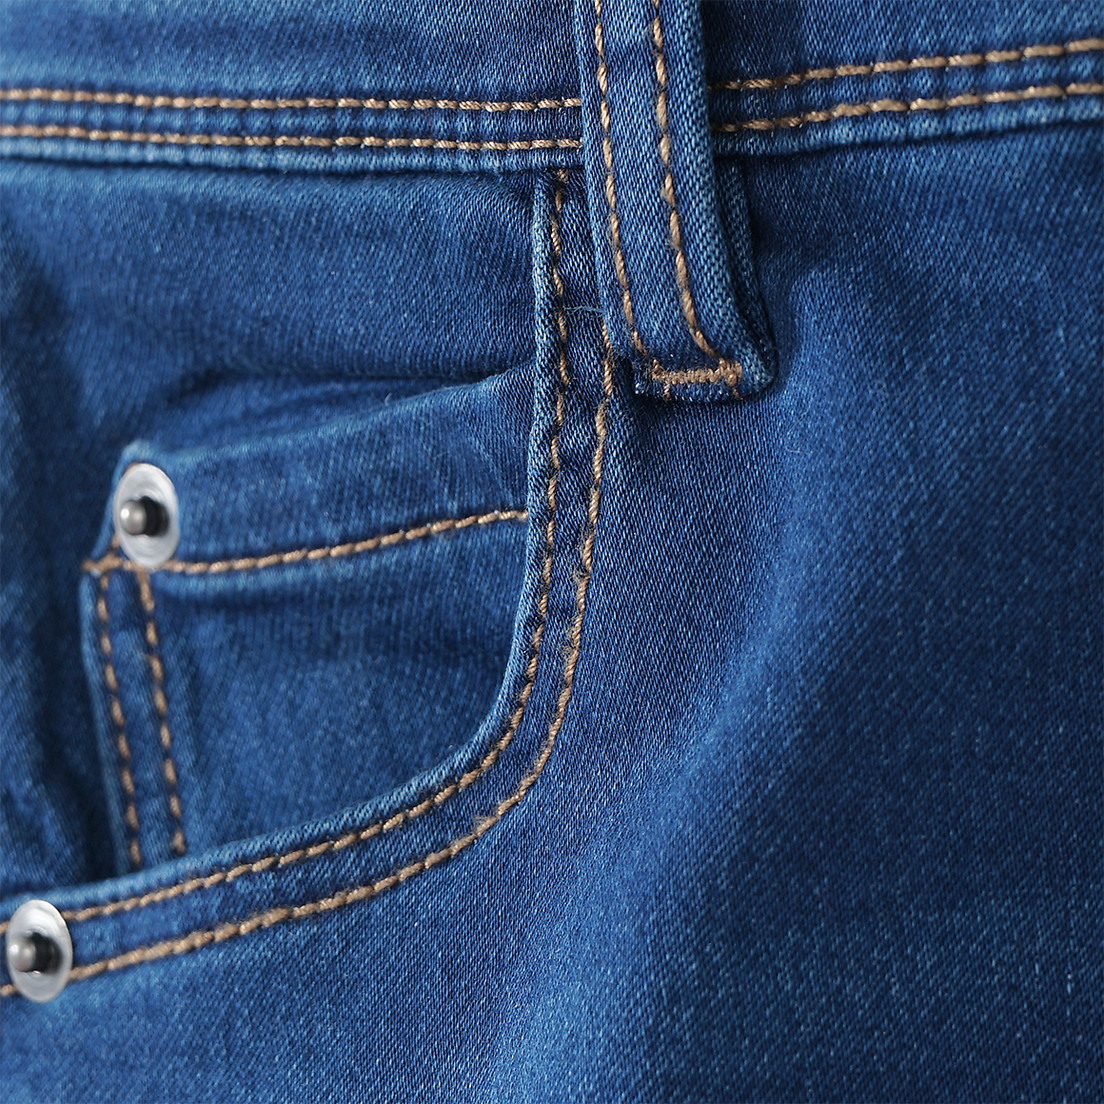 Jungen Slim-Jeans im Five-Pocket-Style | Ernsting's family